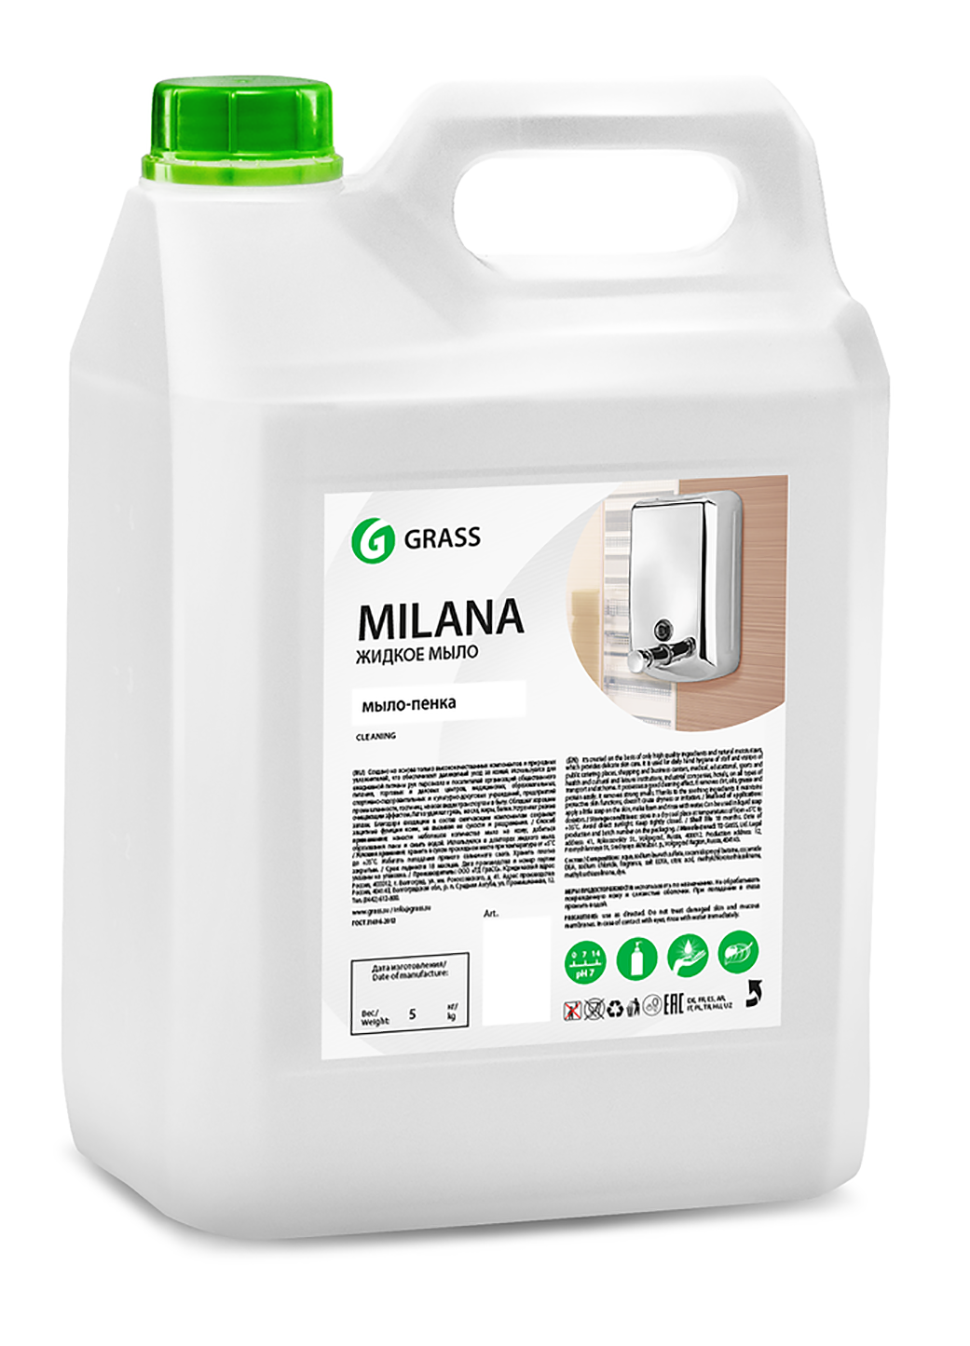 Grass - Жидкое мыло "Milana мыло-пенка" в канистре 5 литров 125362